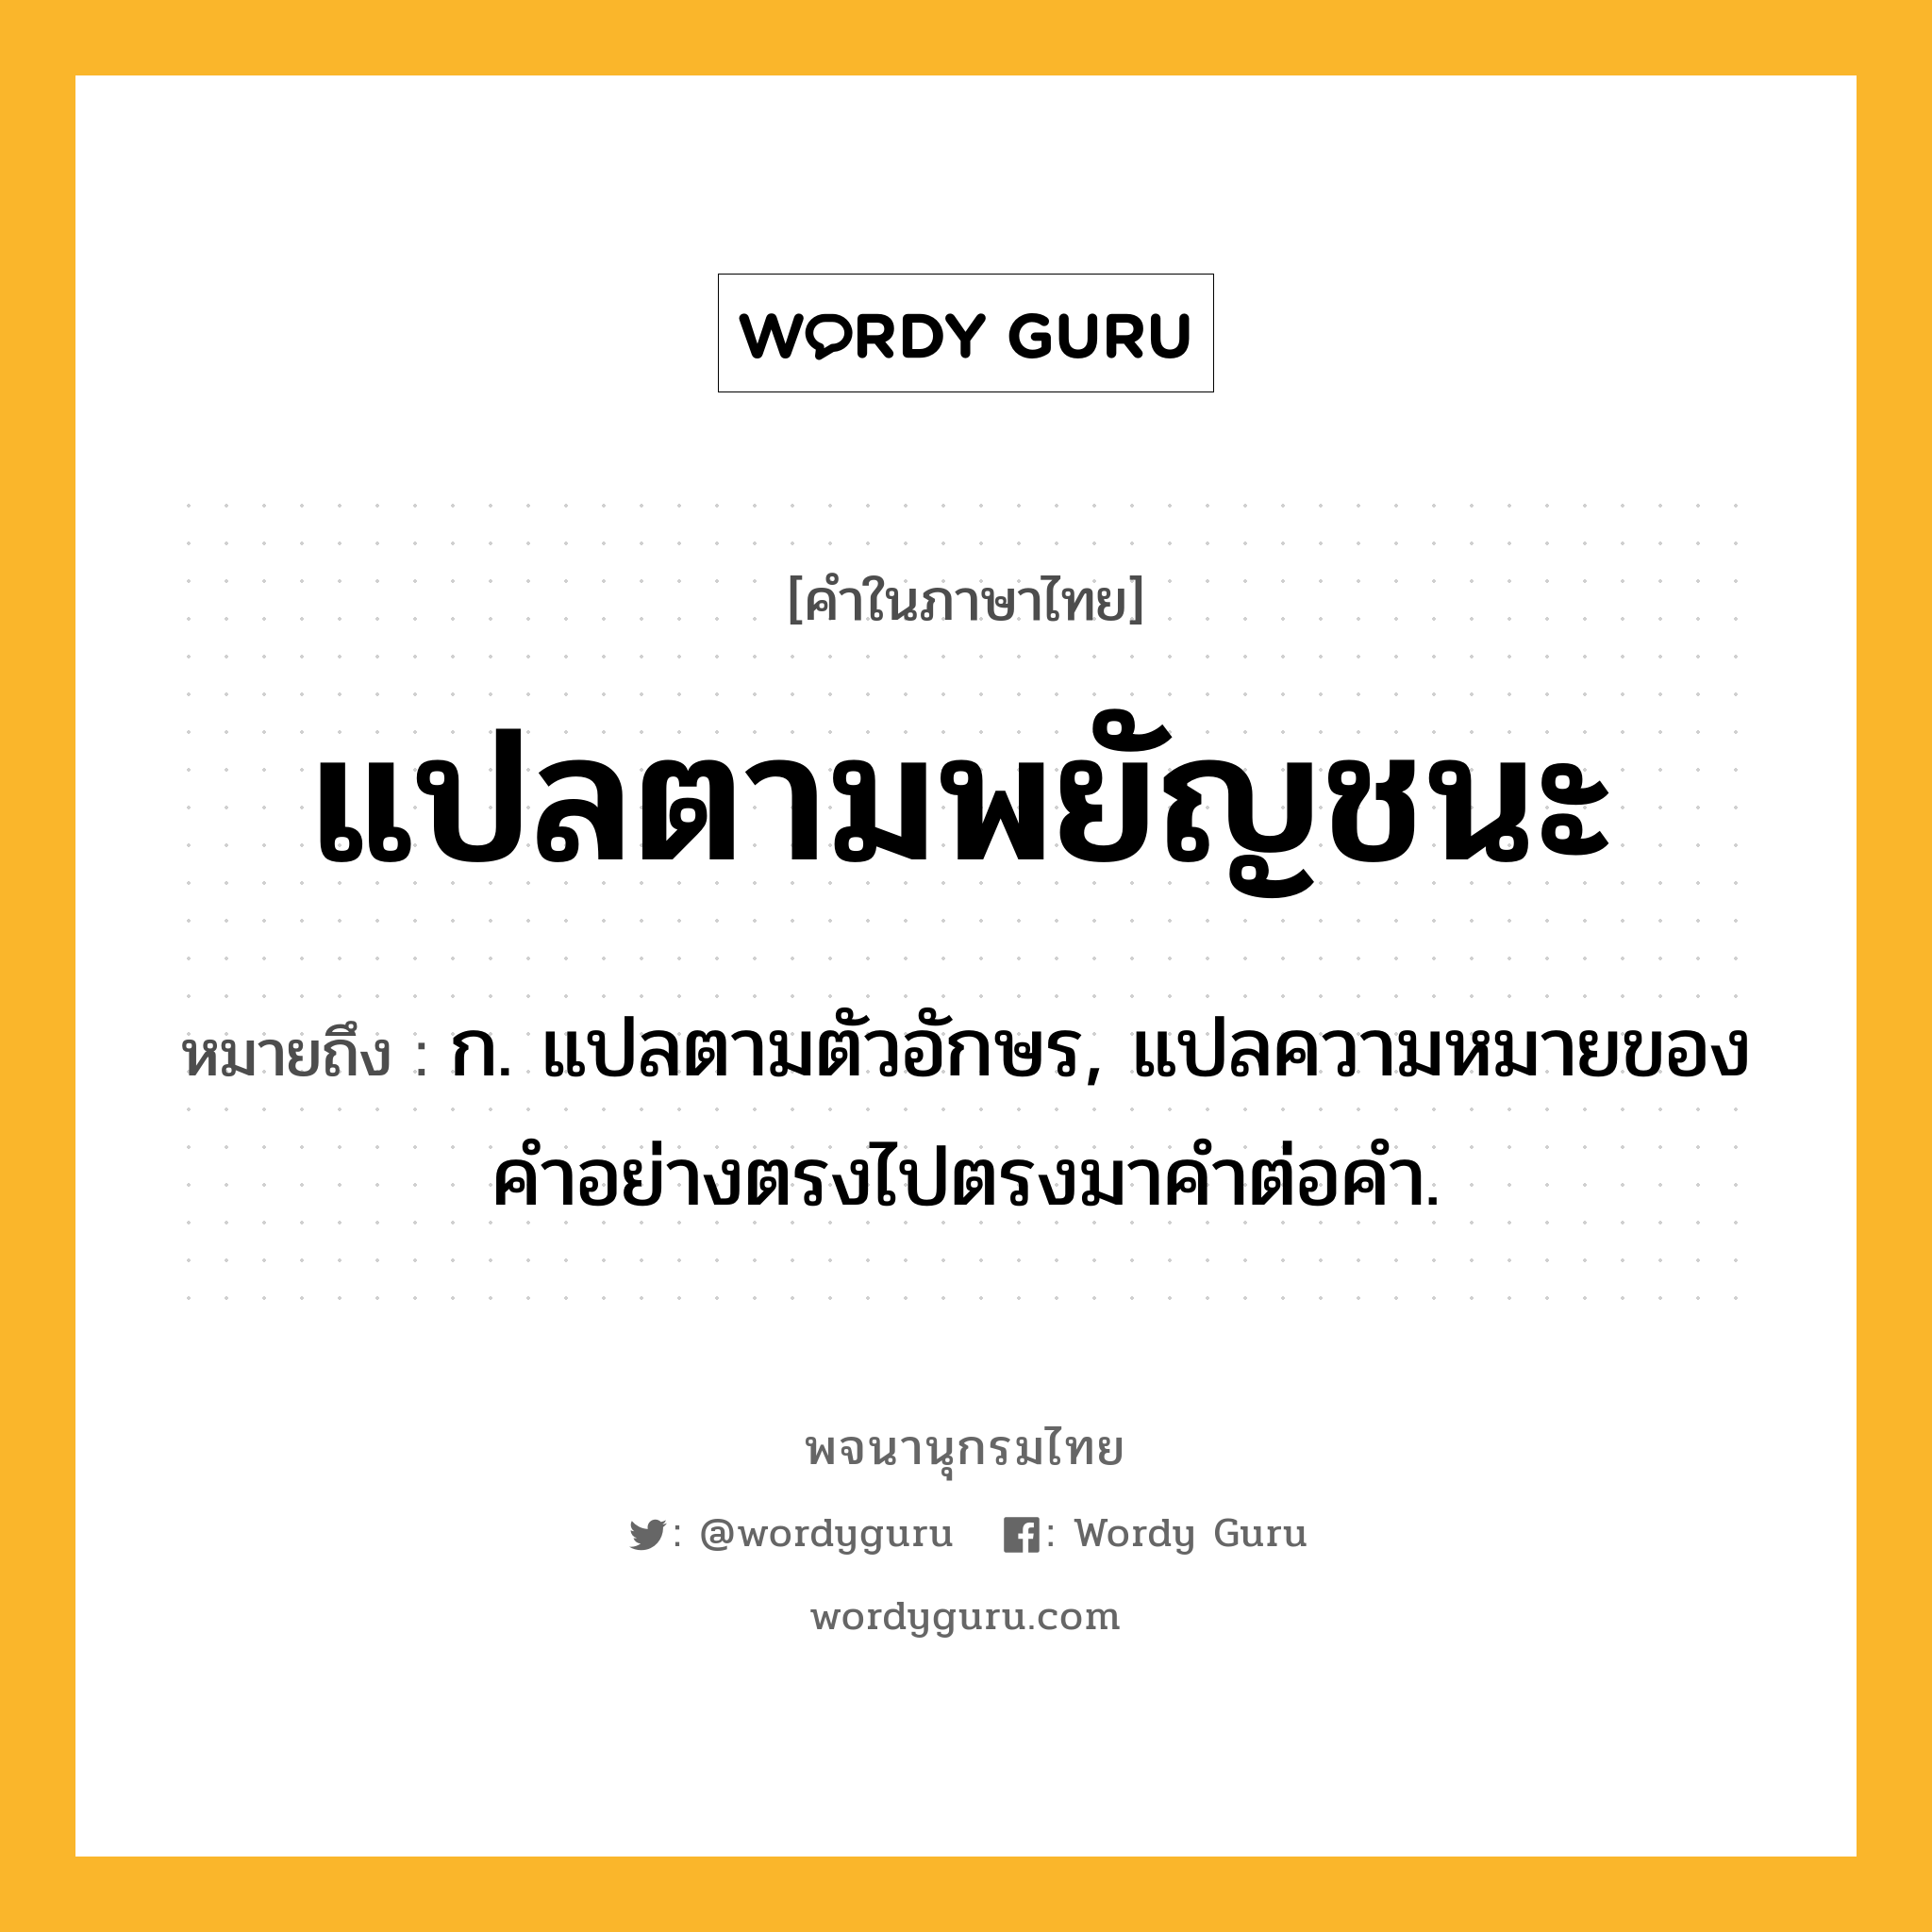 แปลตามพยัญชนะ ความหมาย หมายถึงอะไร?, คำในภาษาไทย แปลตามพยัญชนะ หมายถึง ก. แปลตามตัวอักษร, แปลความหมายของคําอย่างตรงไปตรงมาคําต่อคํา.